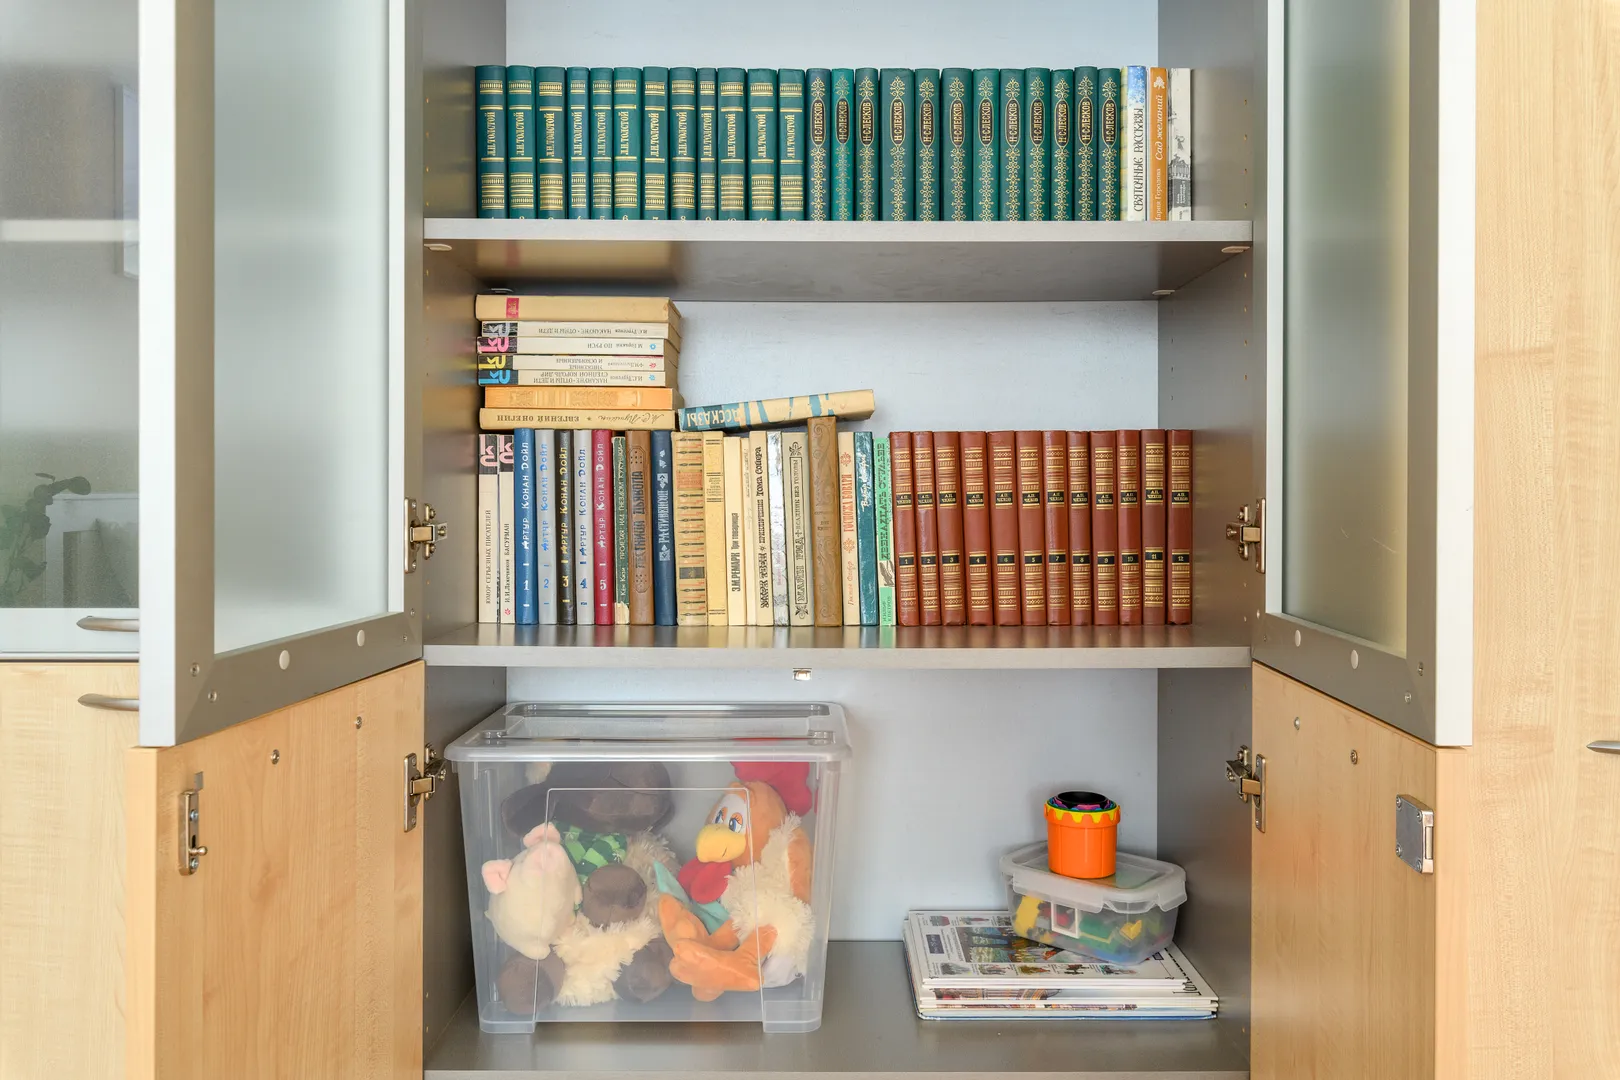 Можно выбрать книгу для чтения из домашней библиотеки, а для маленьких гостей есть мягкие игрушки, книги  и набор лего